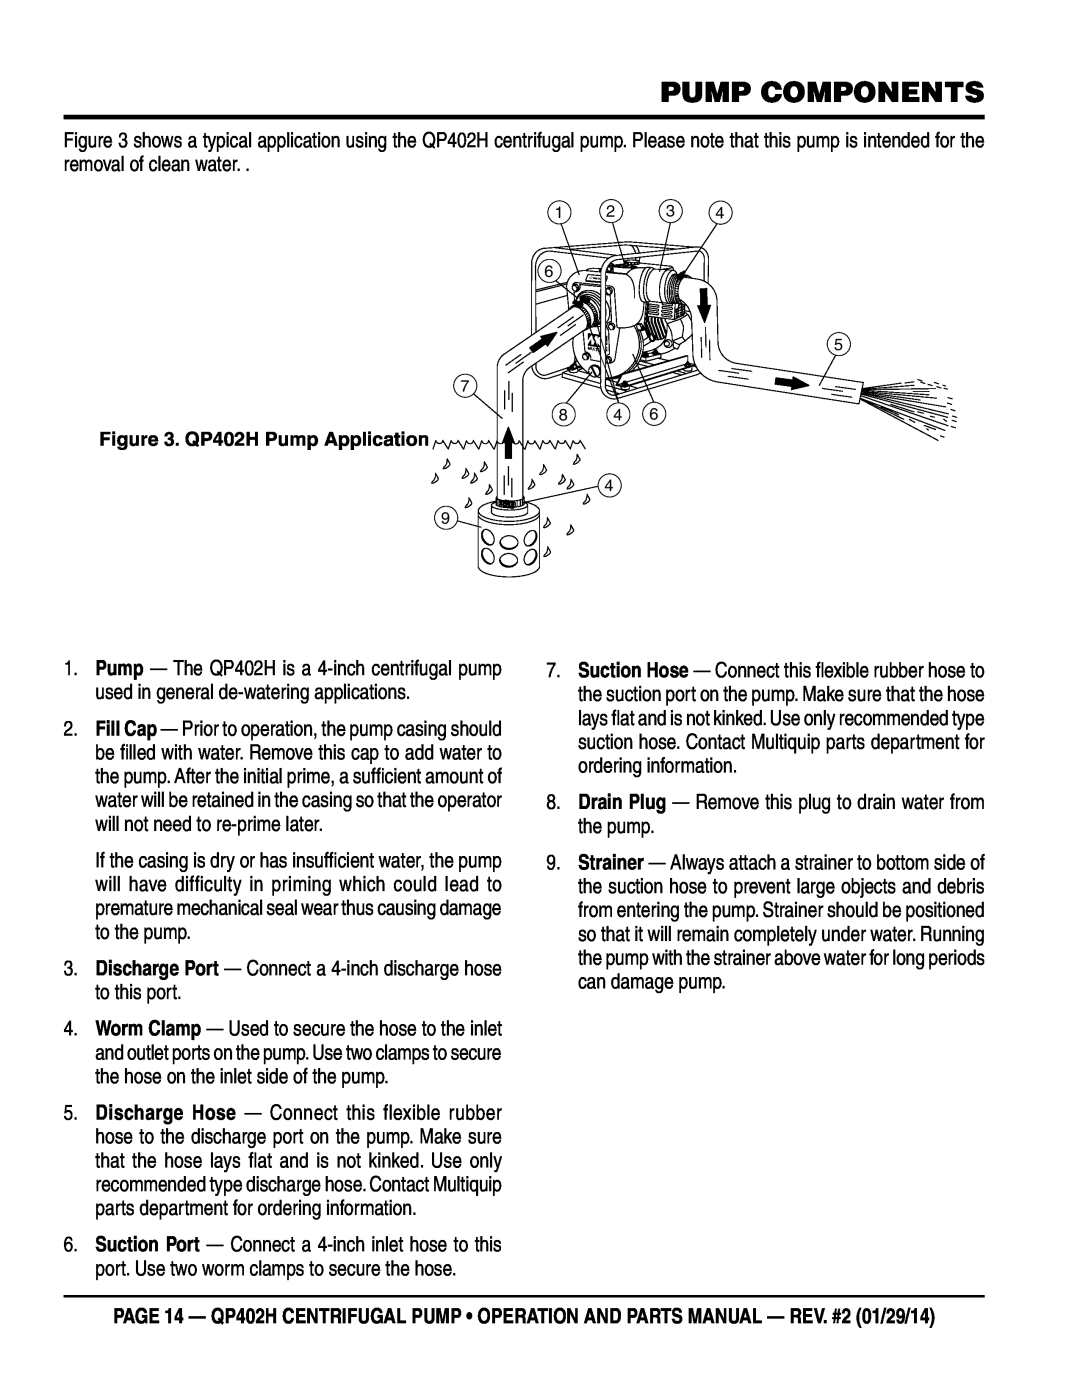 Multiquip qp402h manual Pump Components, QP402H Pump Application 